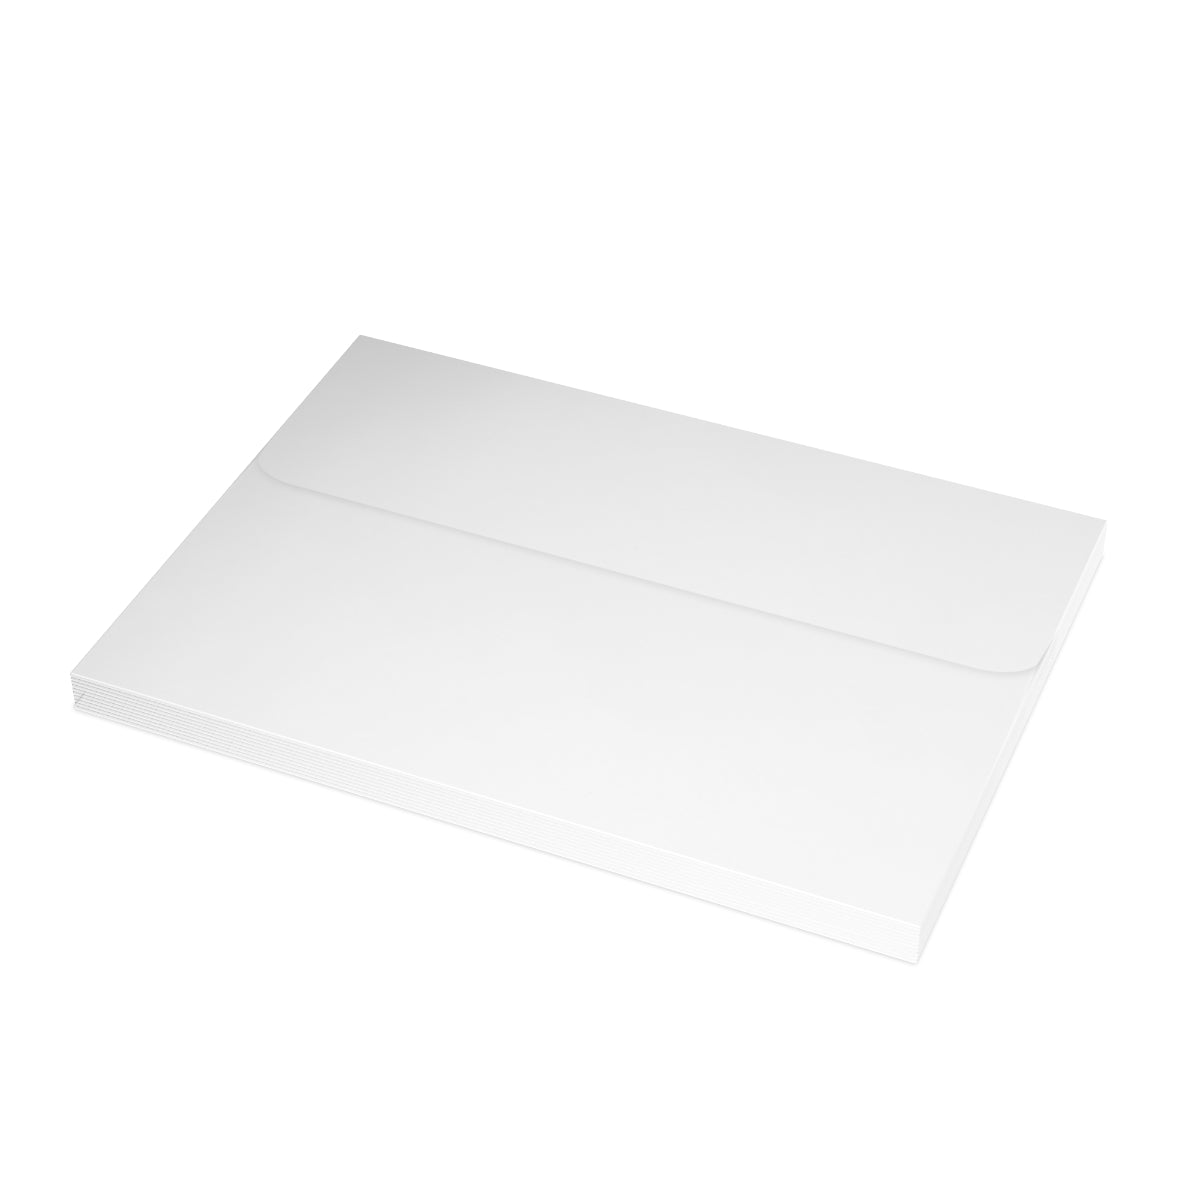 Cartes de notes mates pliées Arizona + enveloppes (10 pièces)